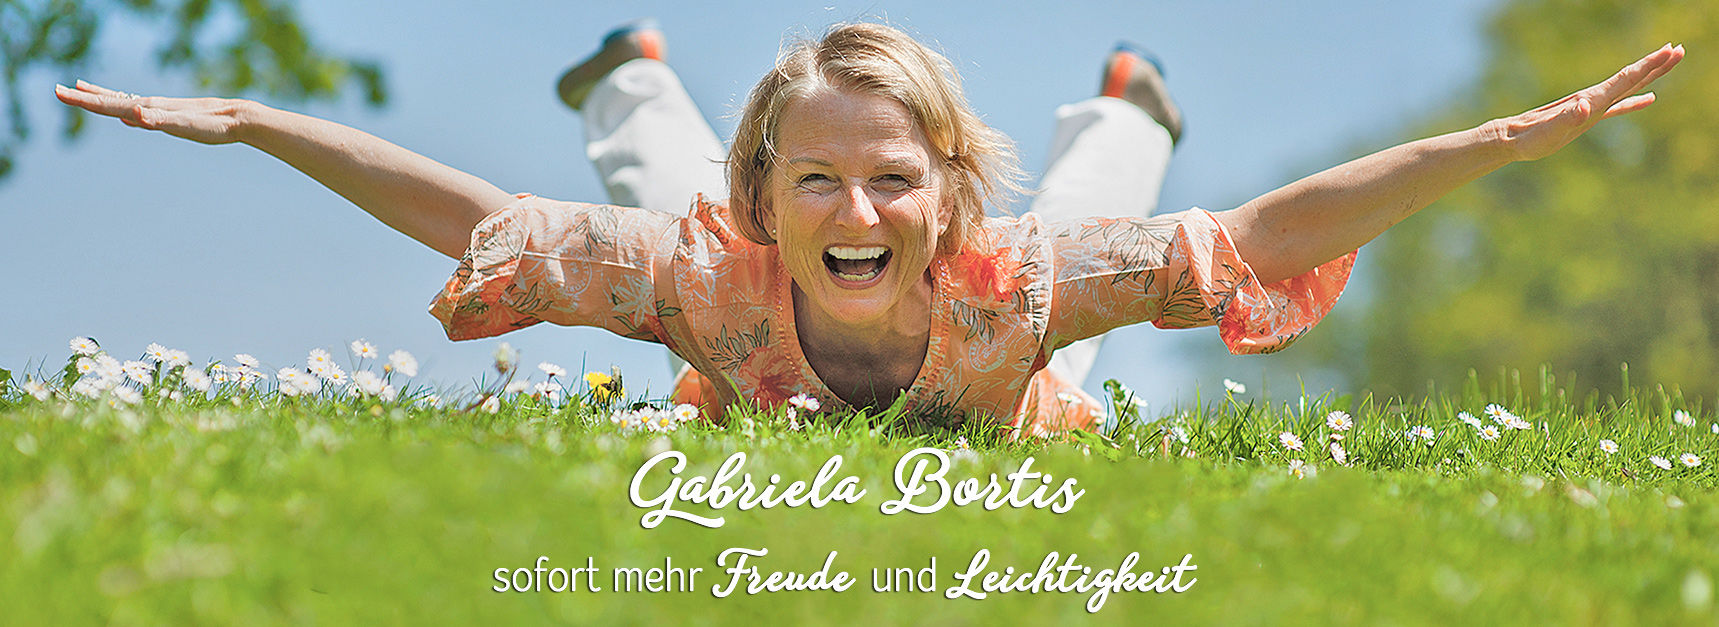 Gabriela Bortis Zack Glücklich Transformative Coaching Meditation 3 Prinzipien Mind Set